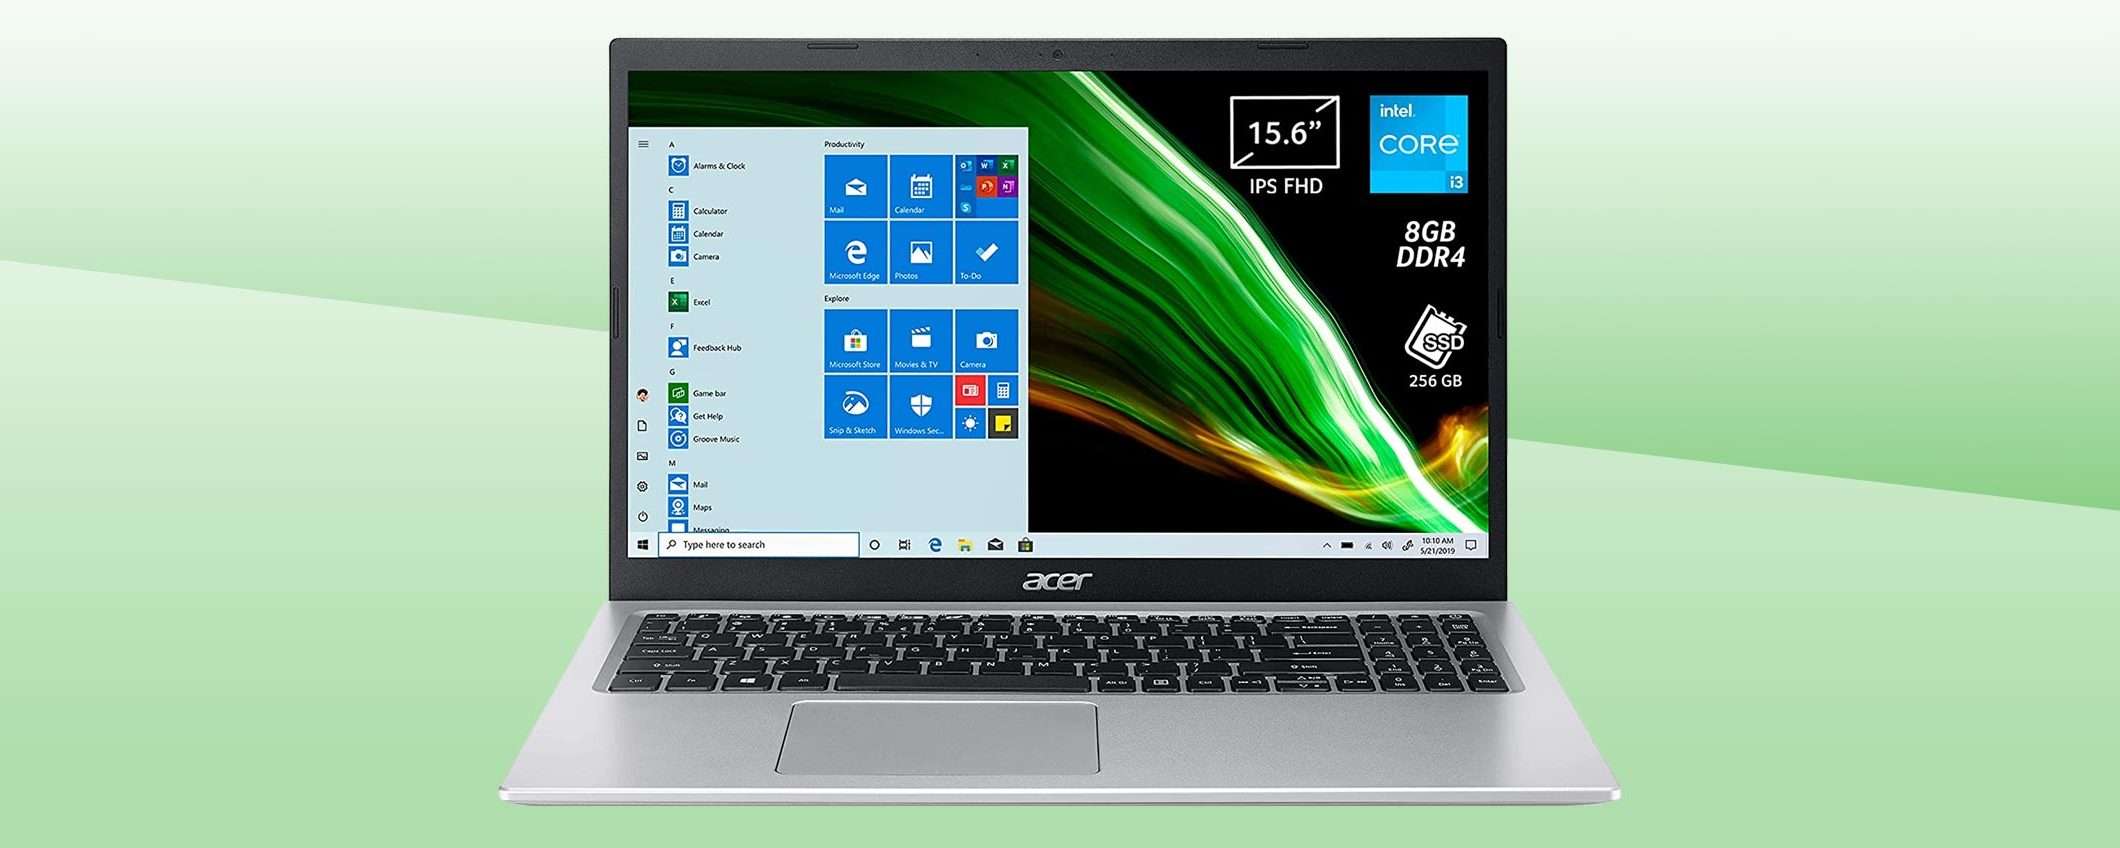 Occasione laptop: Acer Aspire 5 al minimo storico